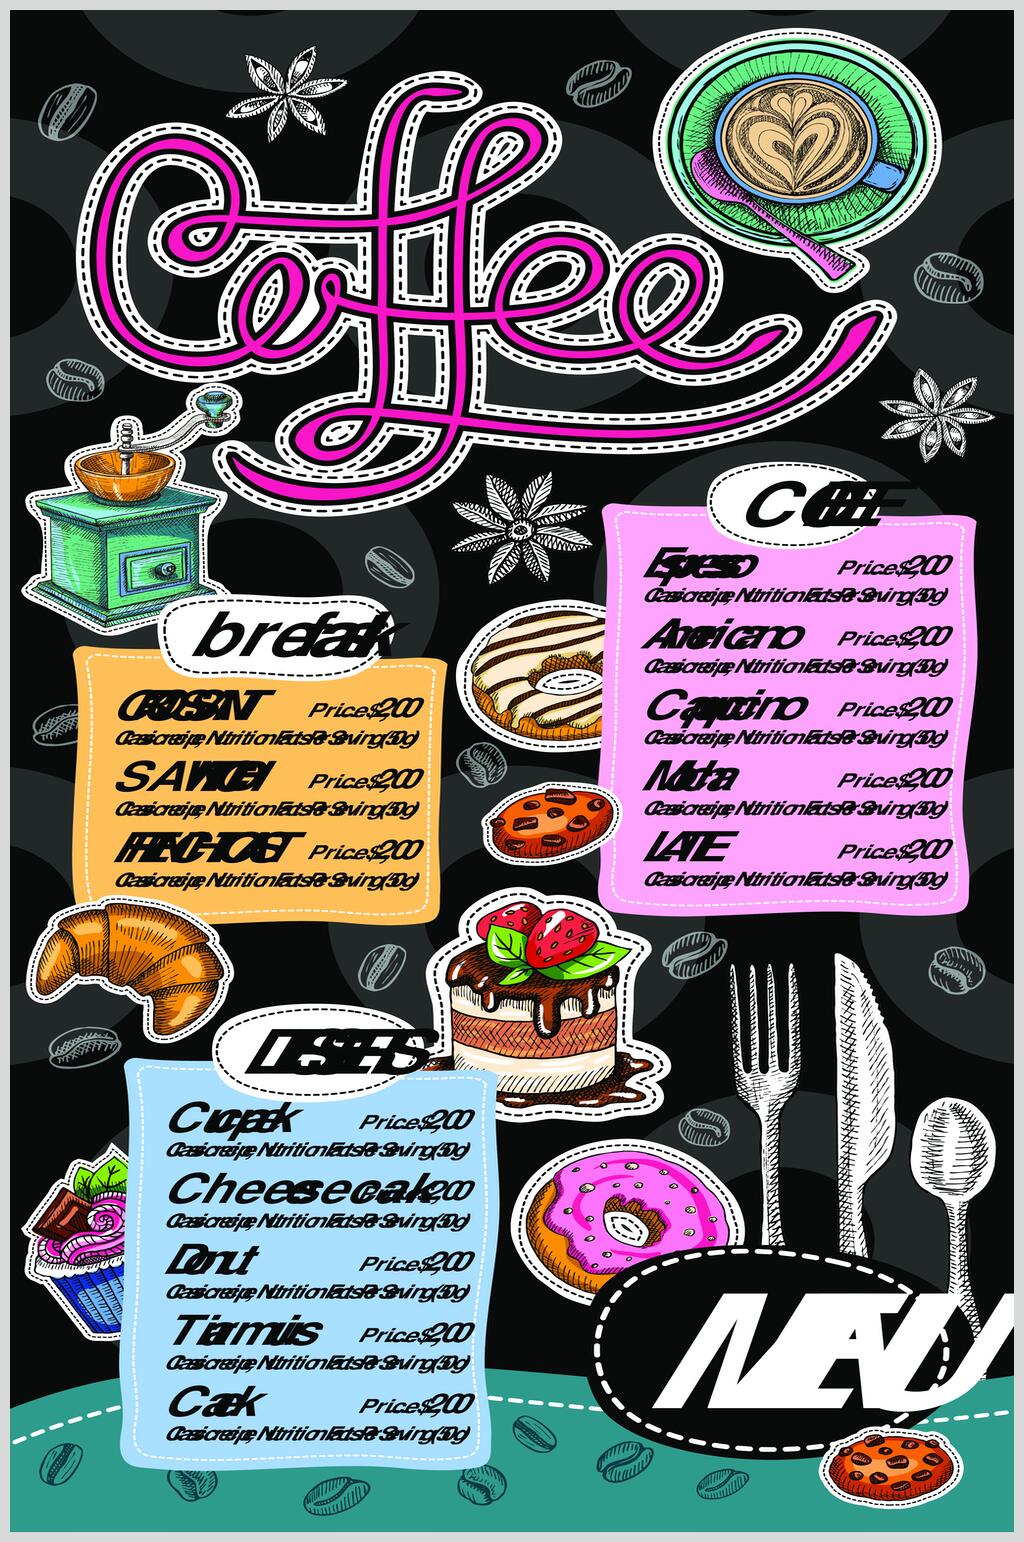 西餐咖啡甜品手绘菜单设计元素